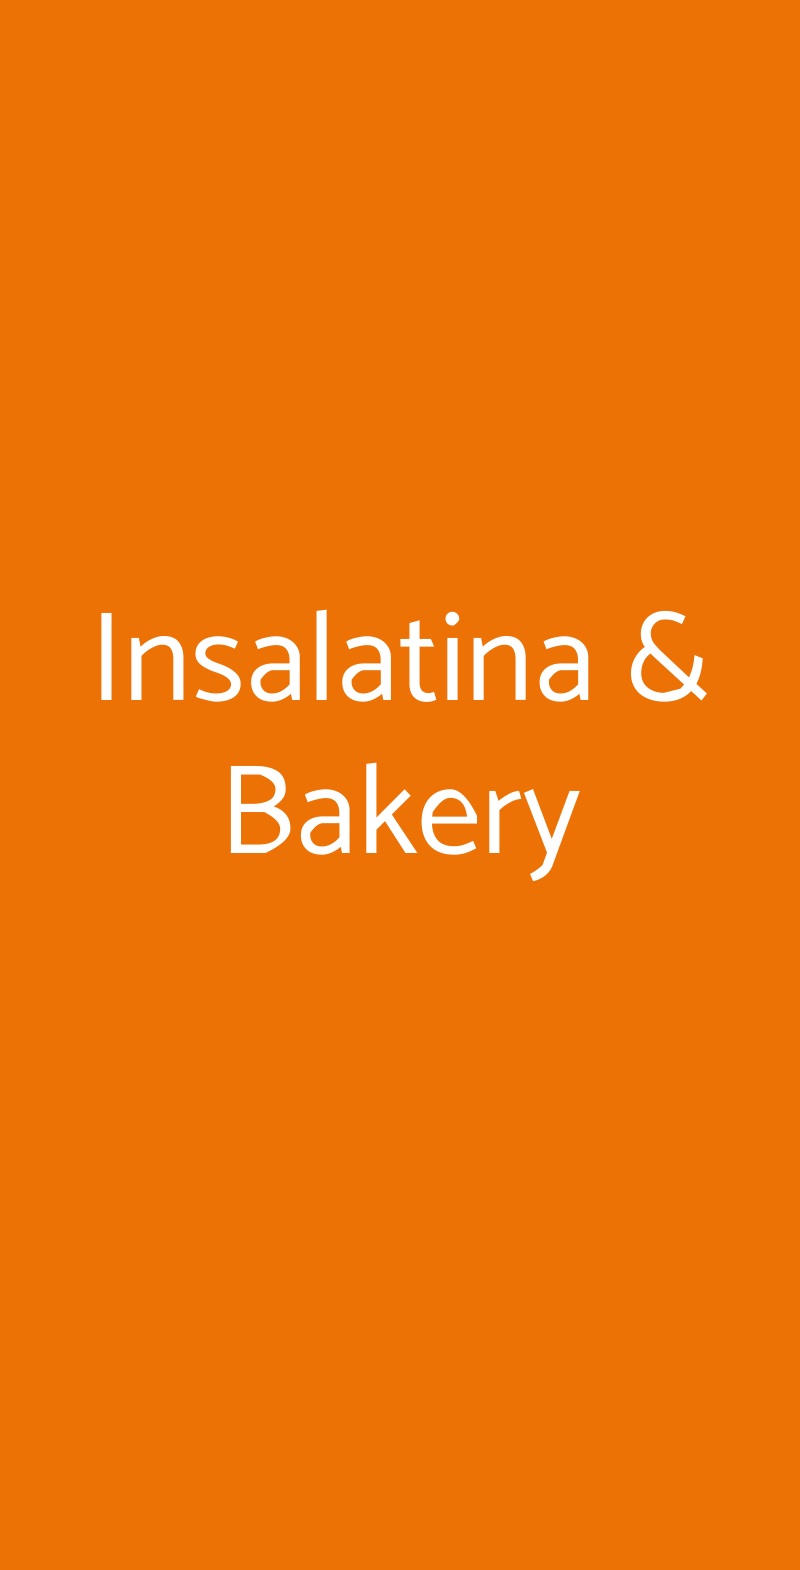 Insalatina & Bakery Milano menù 1 pagina